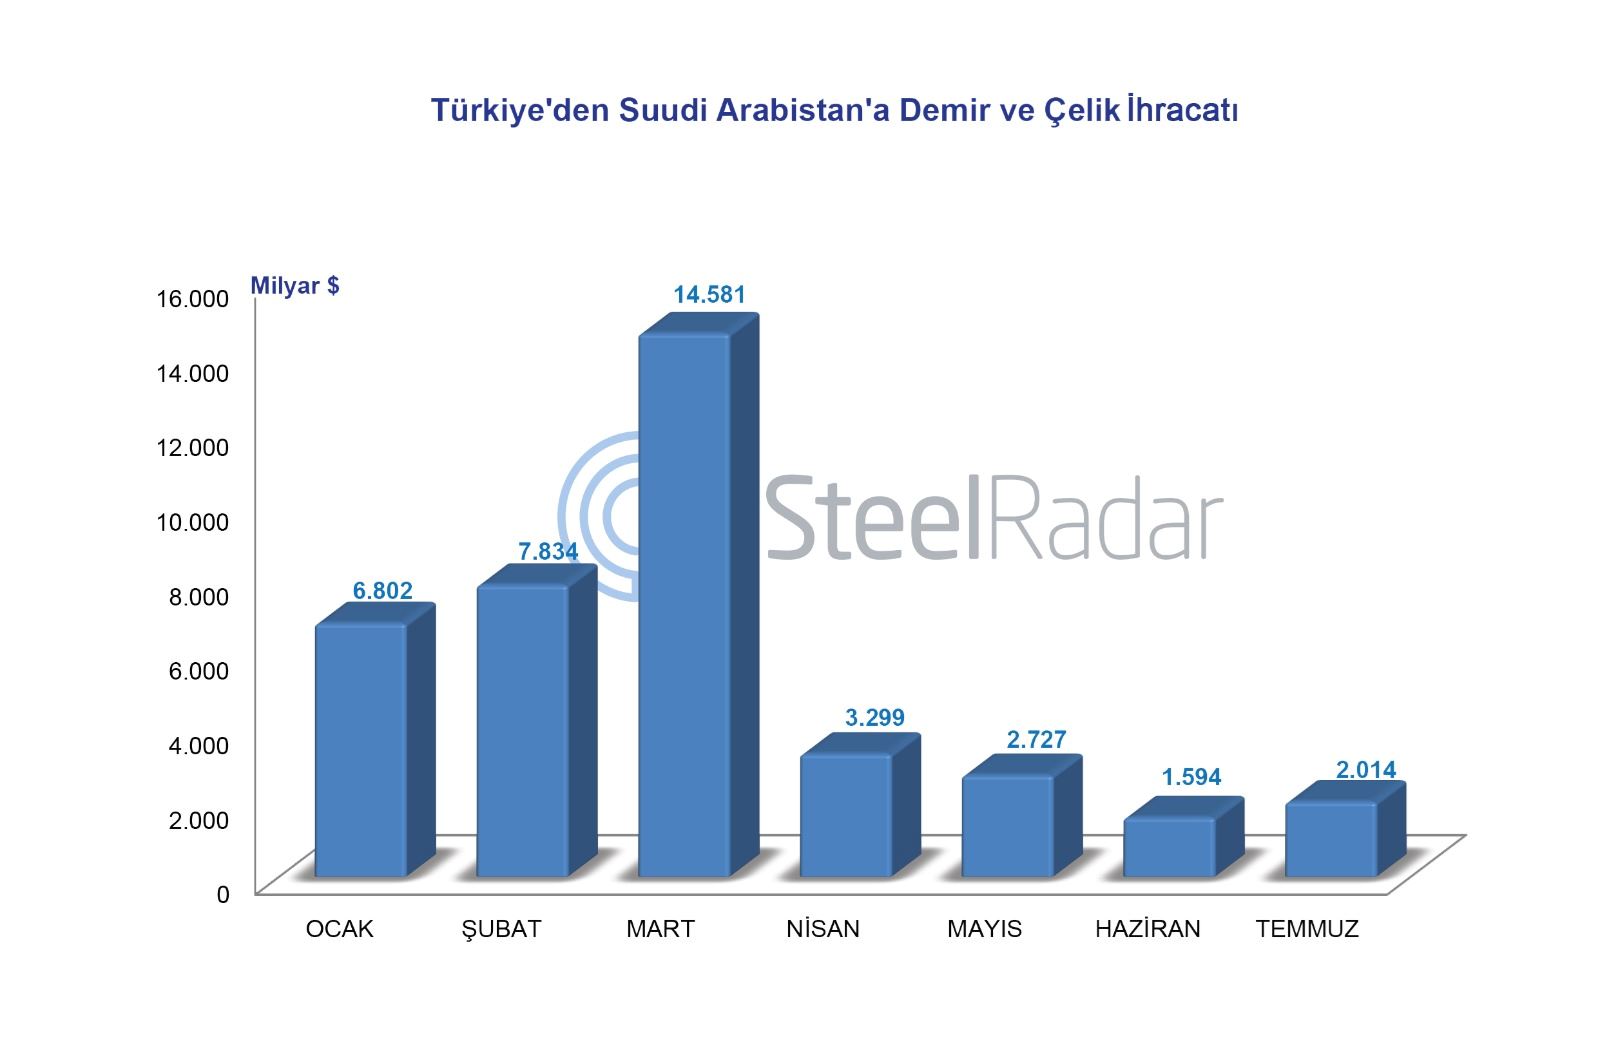 Türkiye'nin Suudi Arabistan'a demir ve çelik ihracatı temmuz ayında arttı